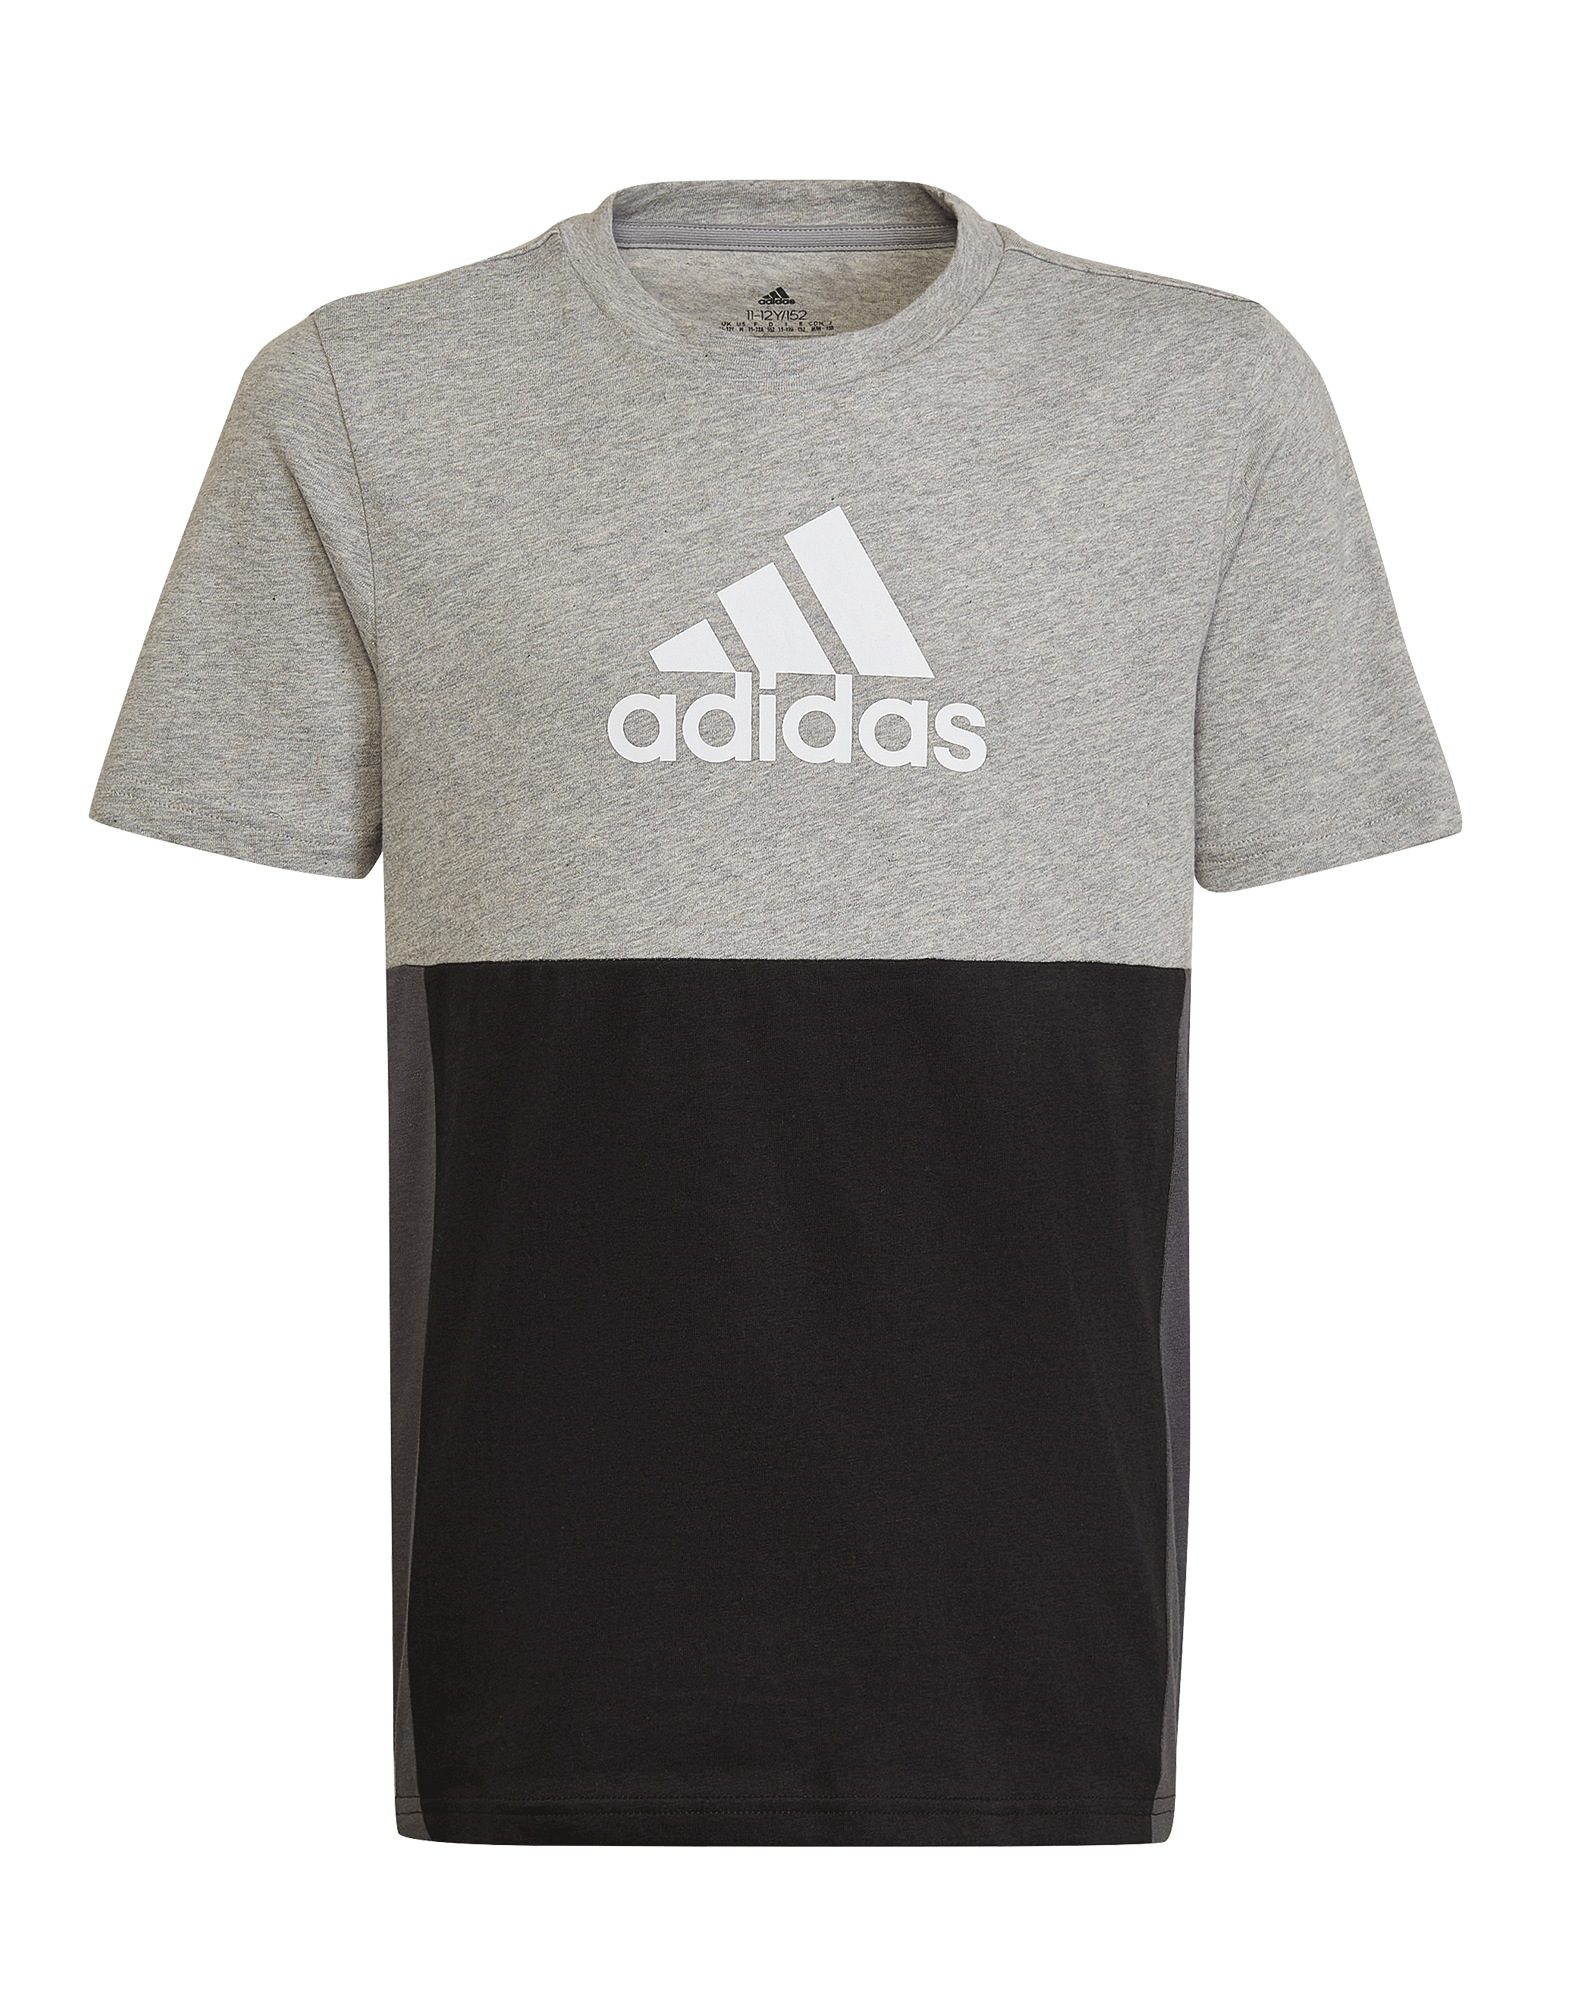 Adidas t-shirt til i grå-sort